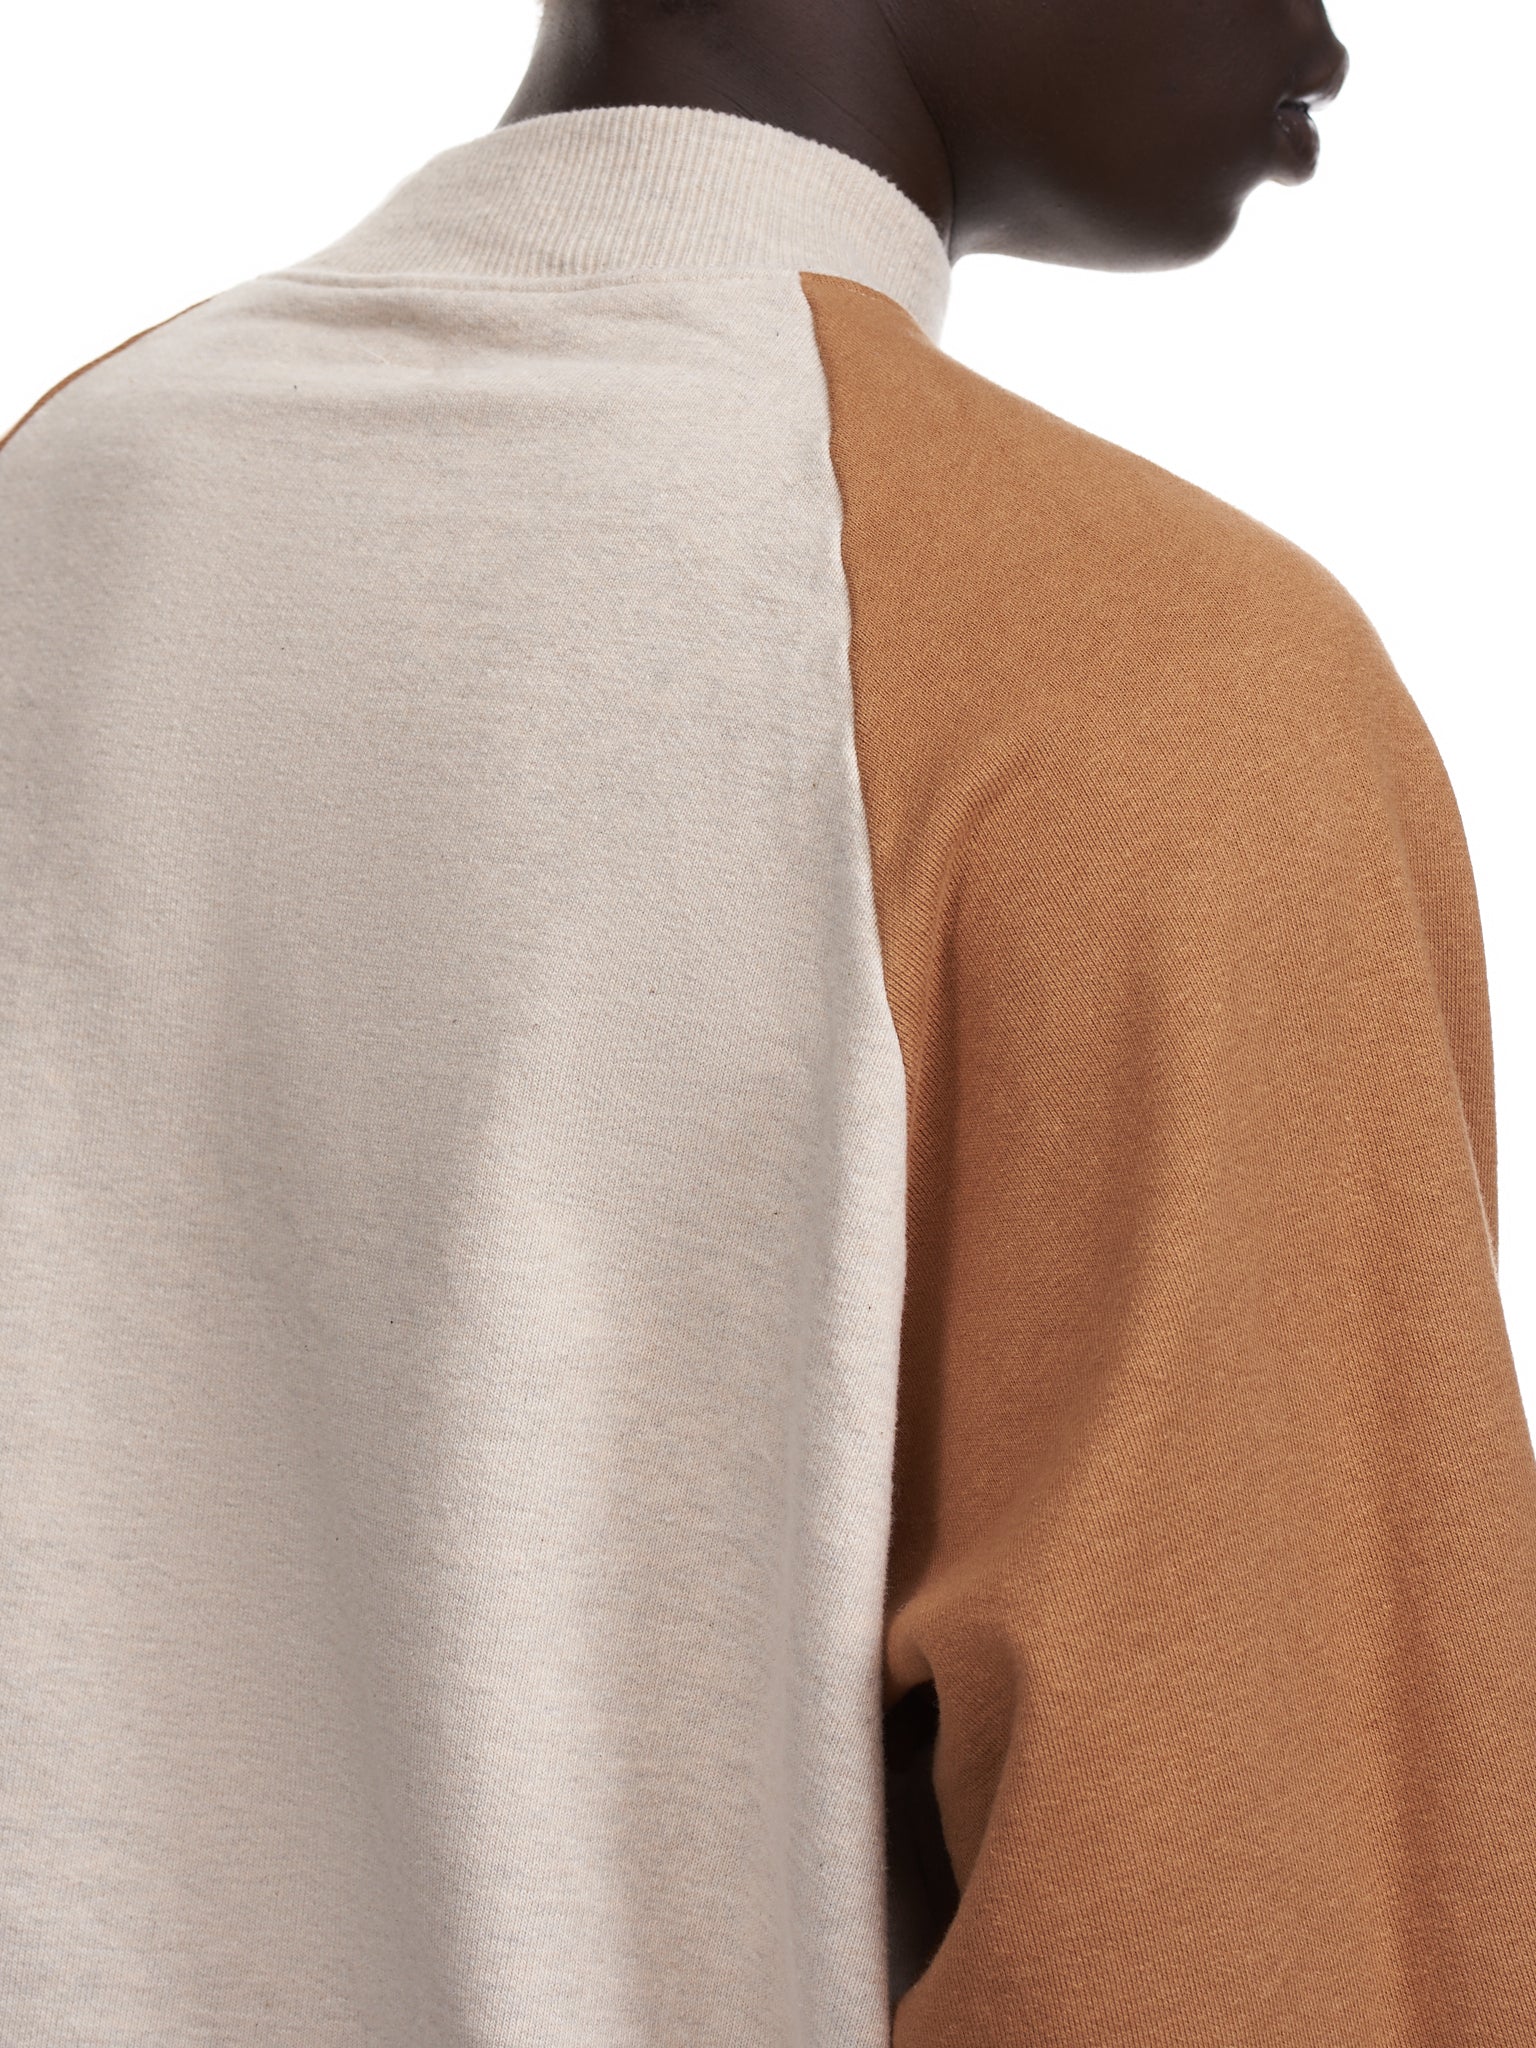 Kapital Raglan Sleeve High Neck Sweatshirt | H. Lorenzo - detail 